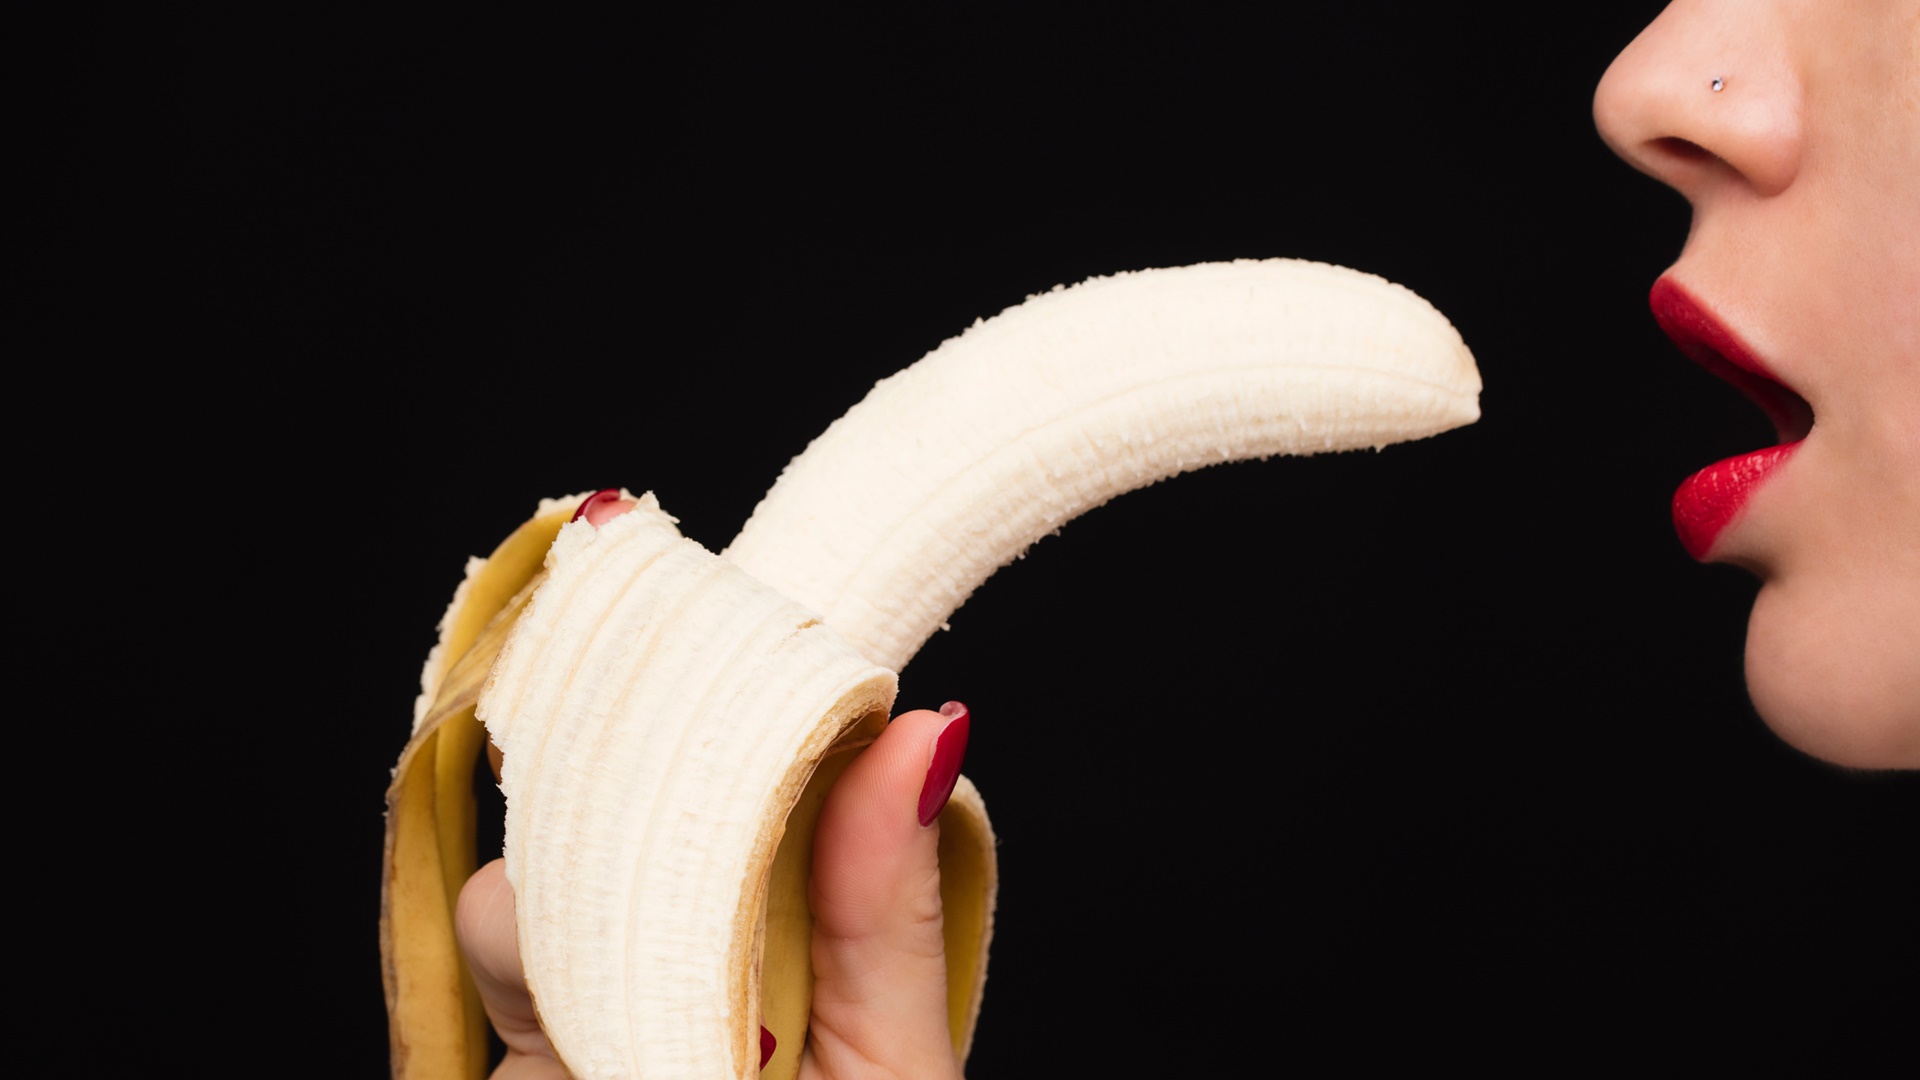 Žena si dáva banán do úst